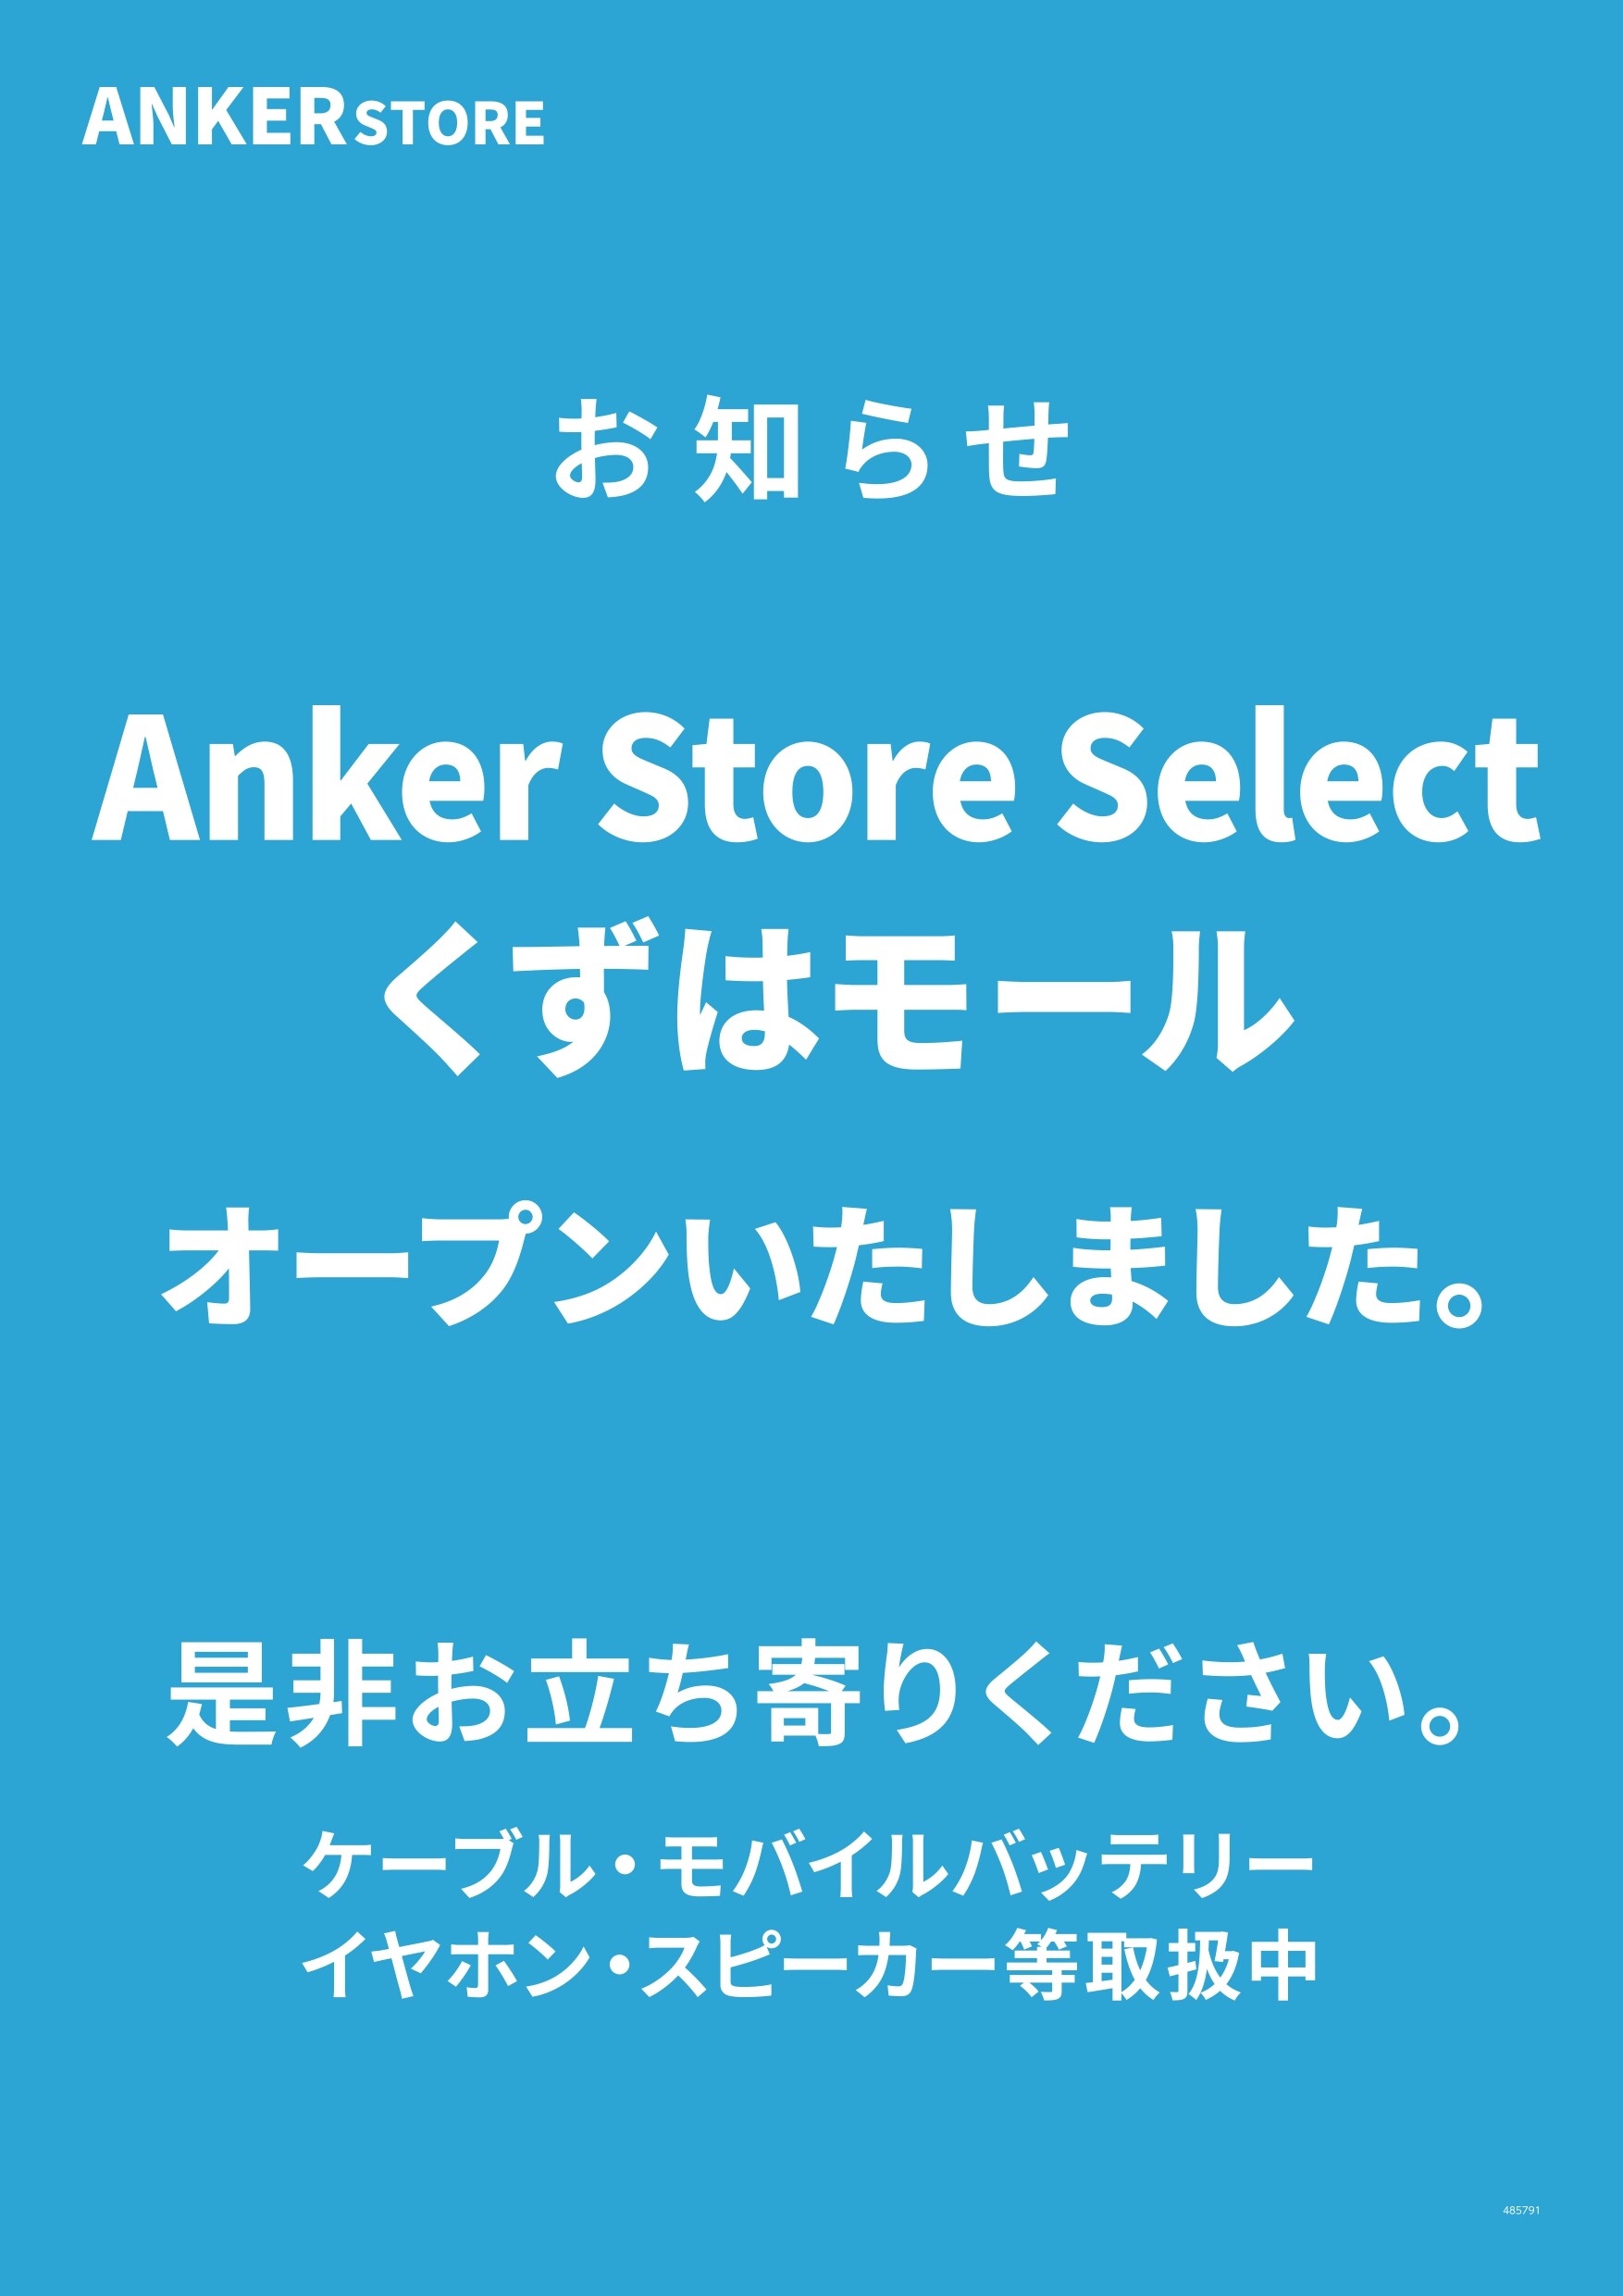 Anker製品取り扱い始めました。